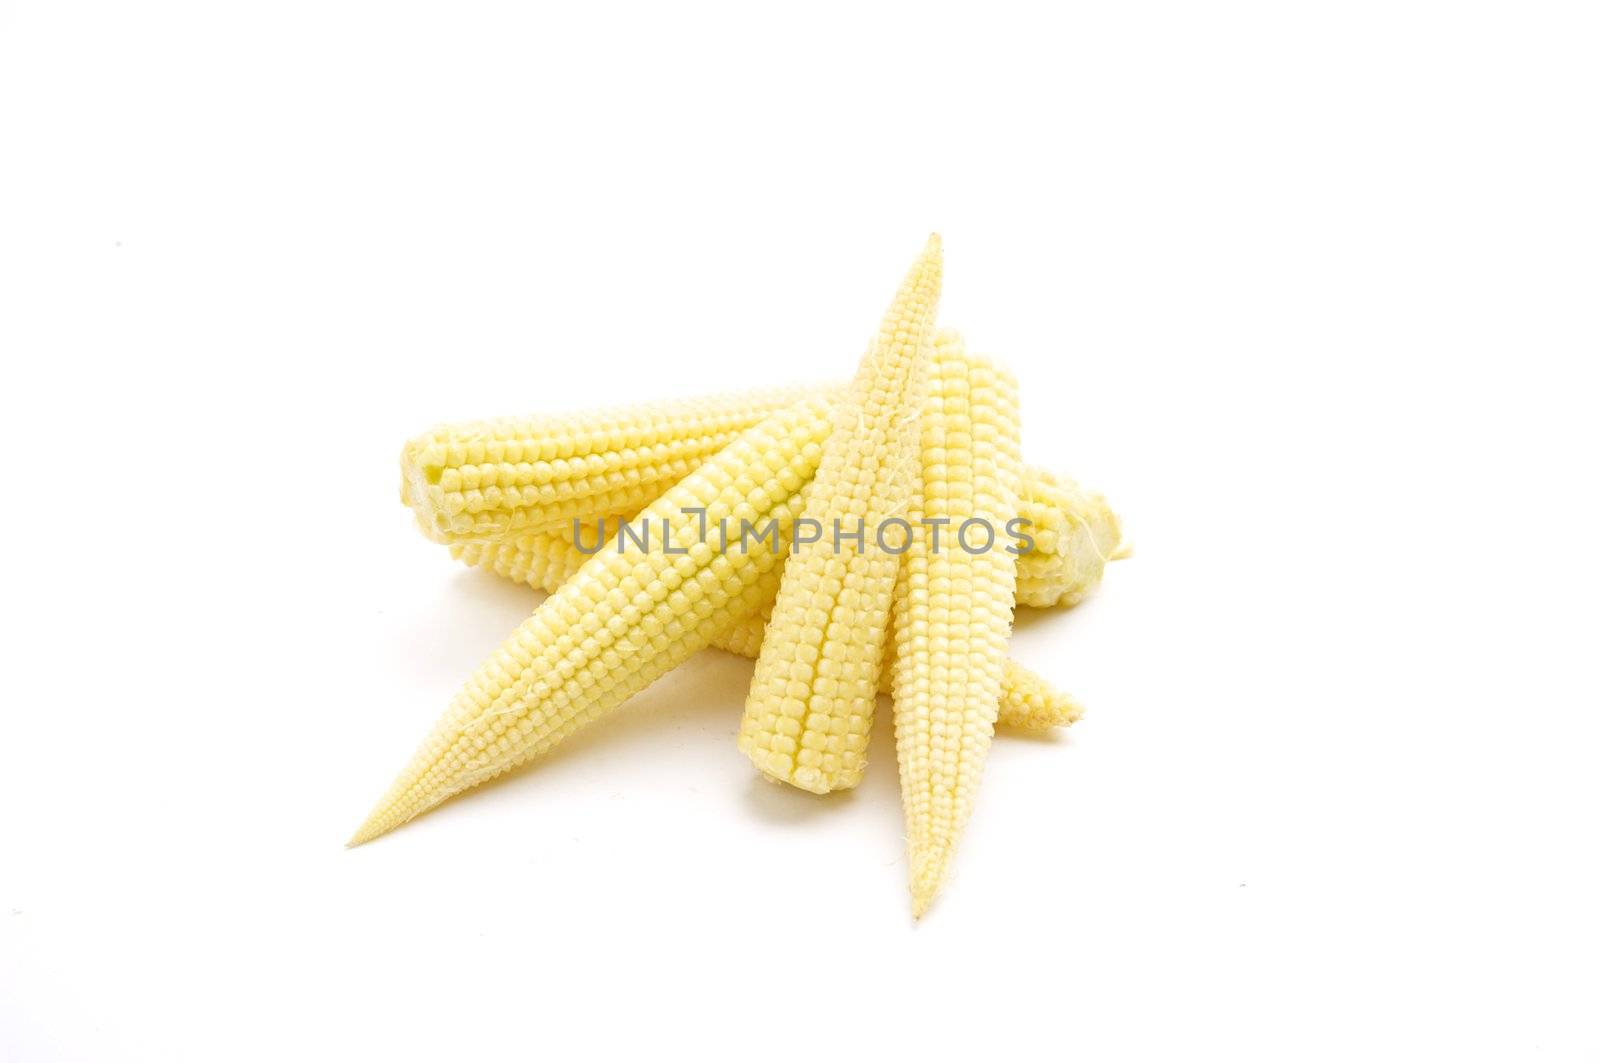 Baby Corn by sjeacle